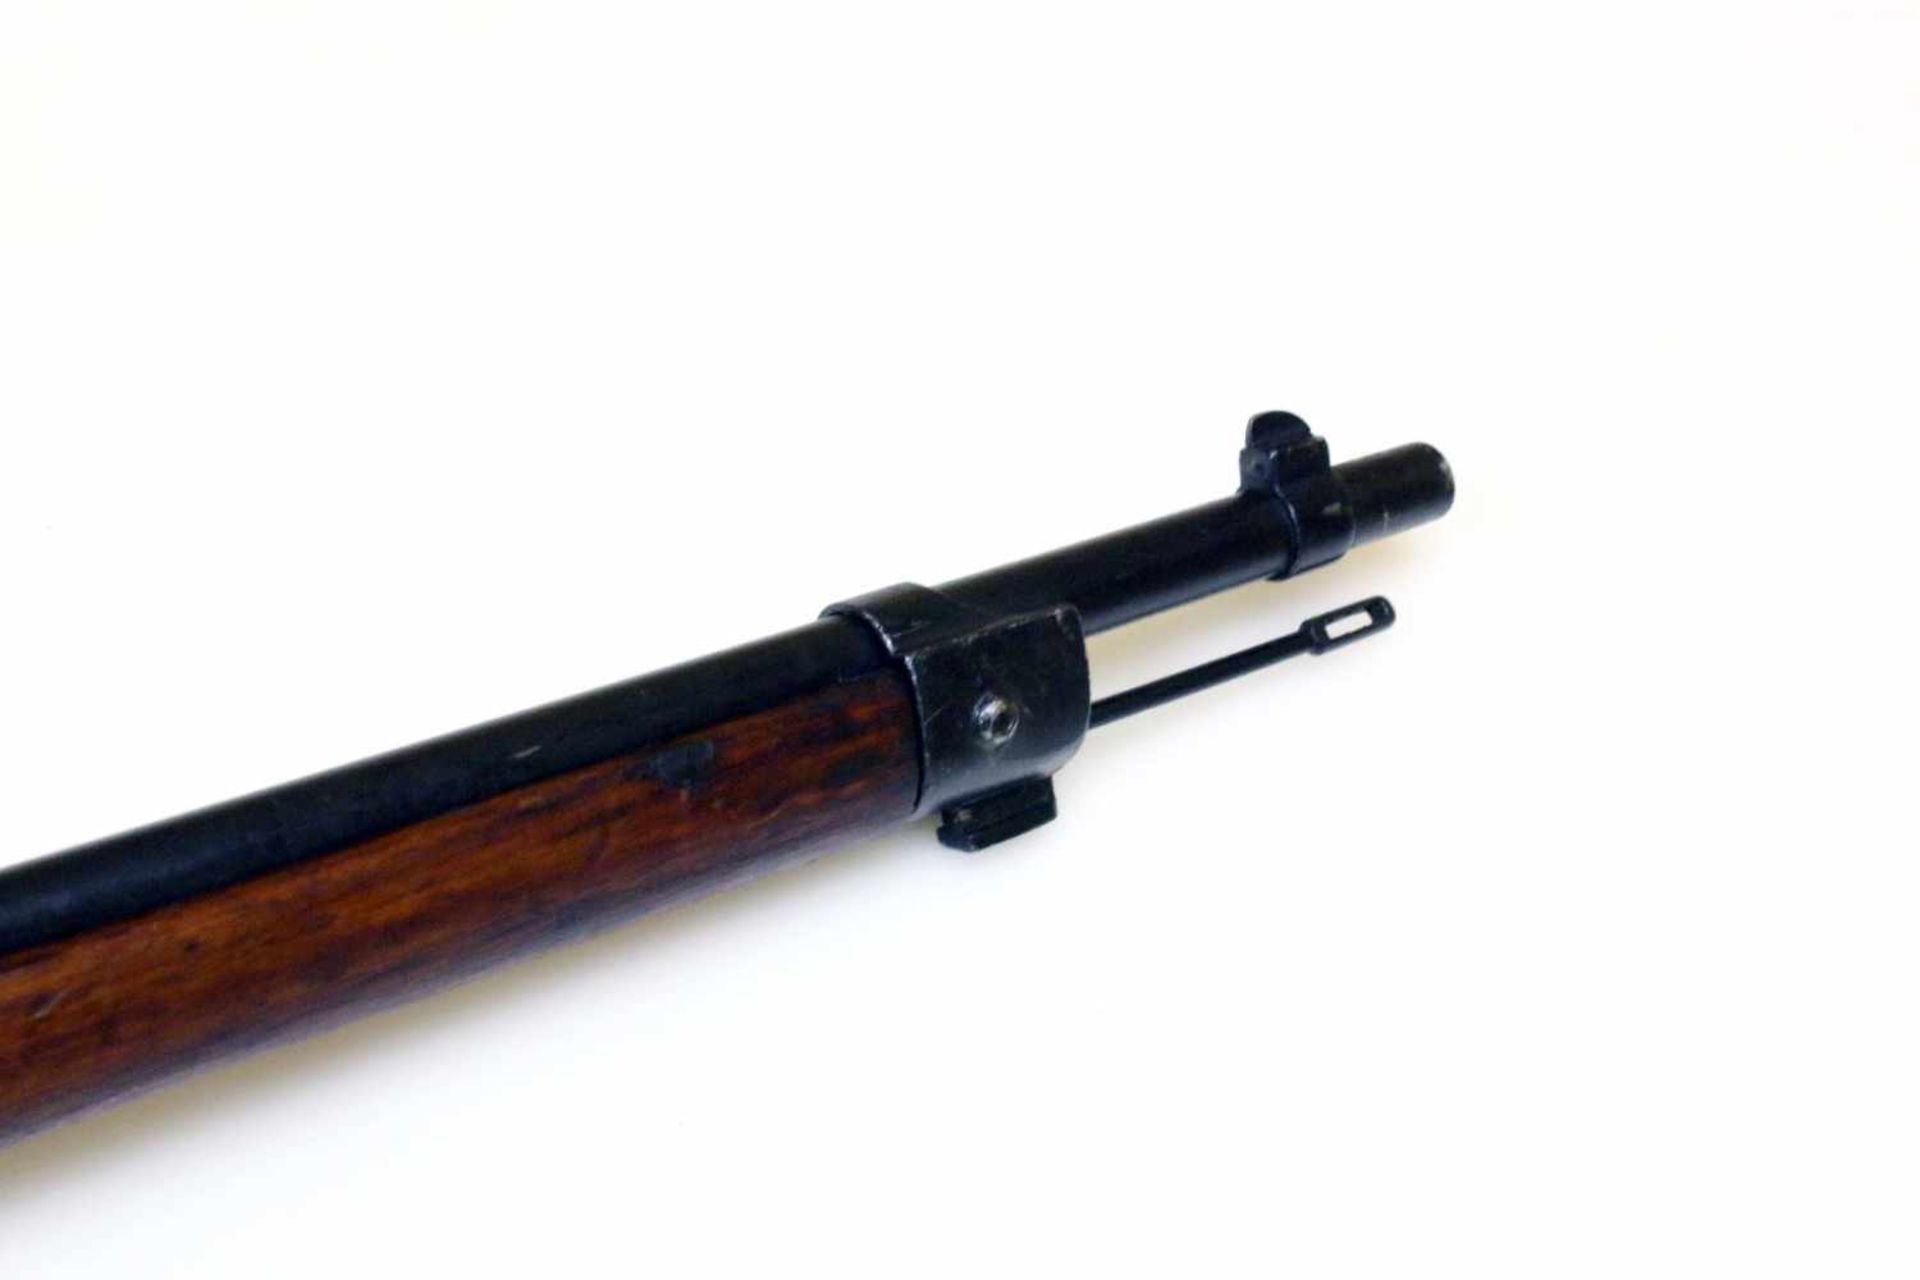 Gewehr Carcano M1891 Cal. 6,5 x 52mm, Laufseele matt, rauh. Auf der Laufwurzel bez. "Terni / 18", - Bild 5 aus 11